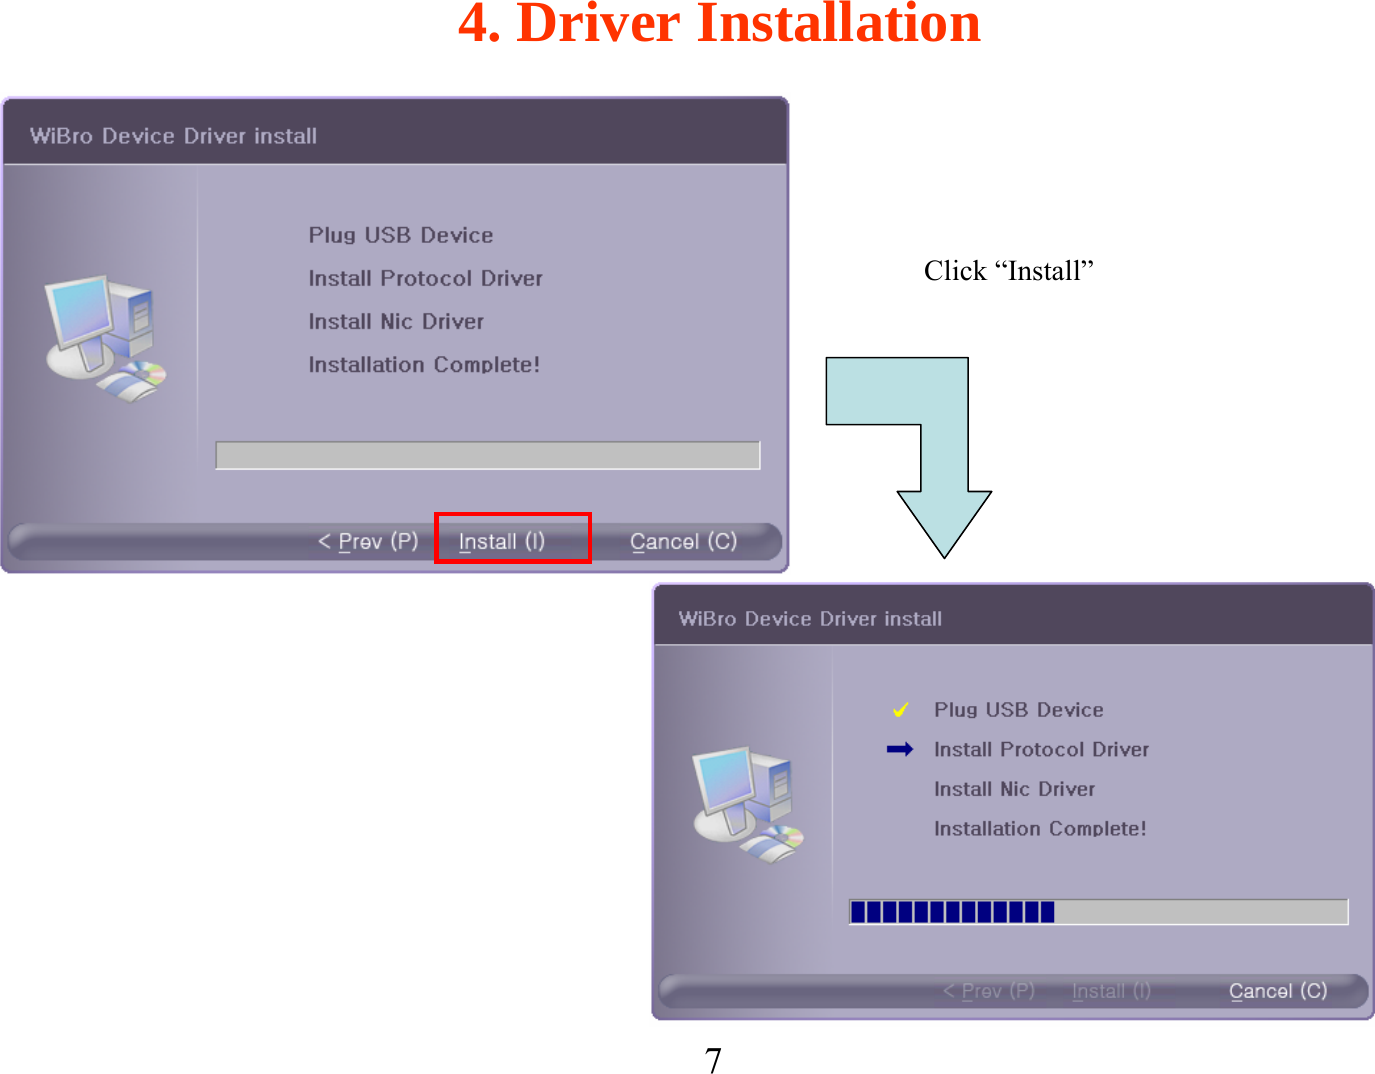 7Click “Install”4. Driver Installation